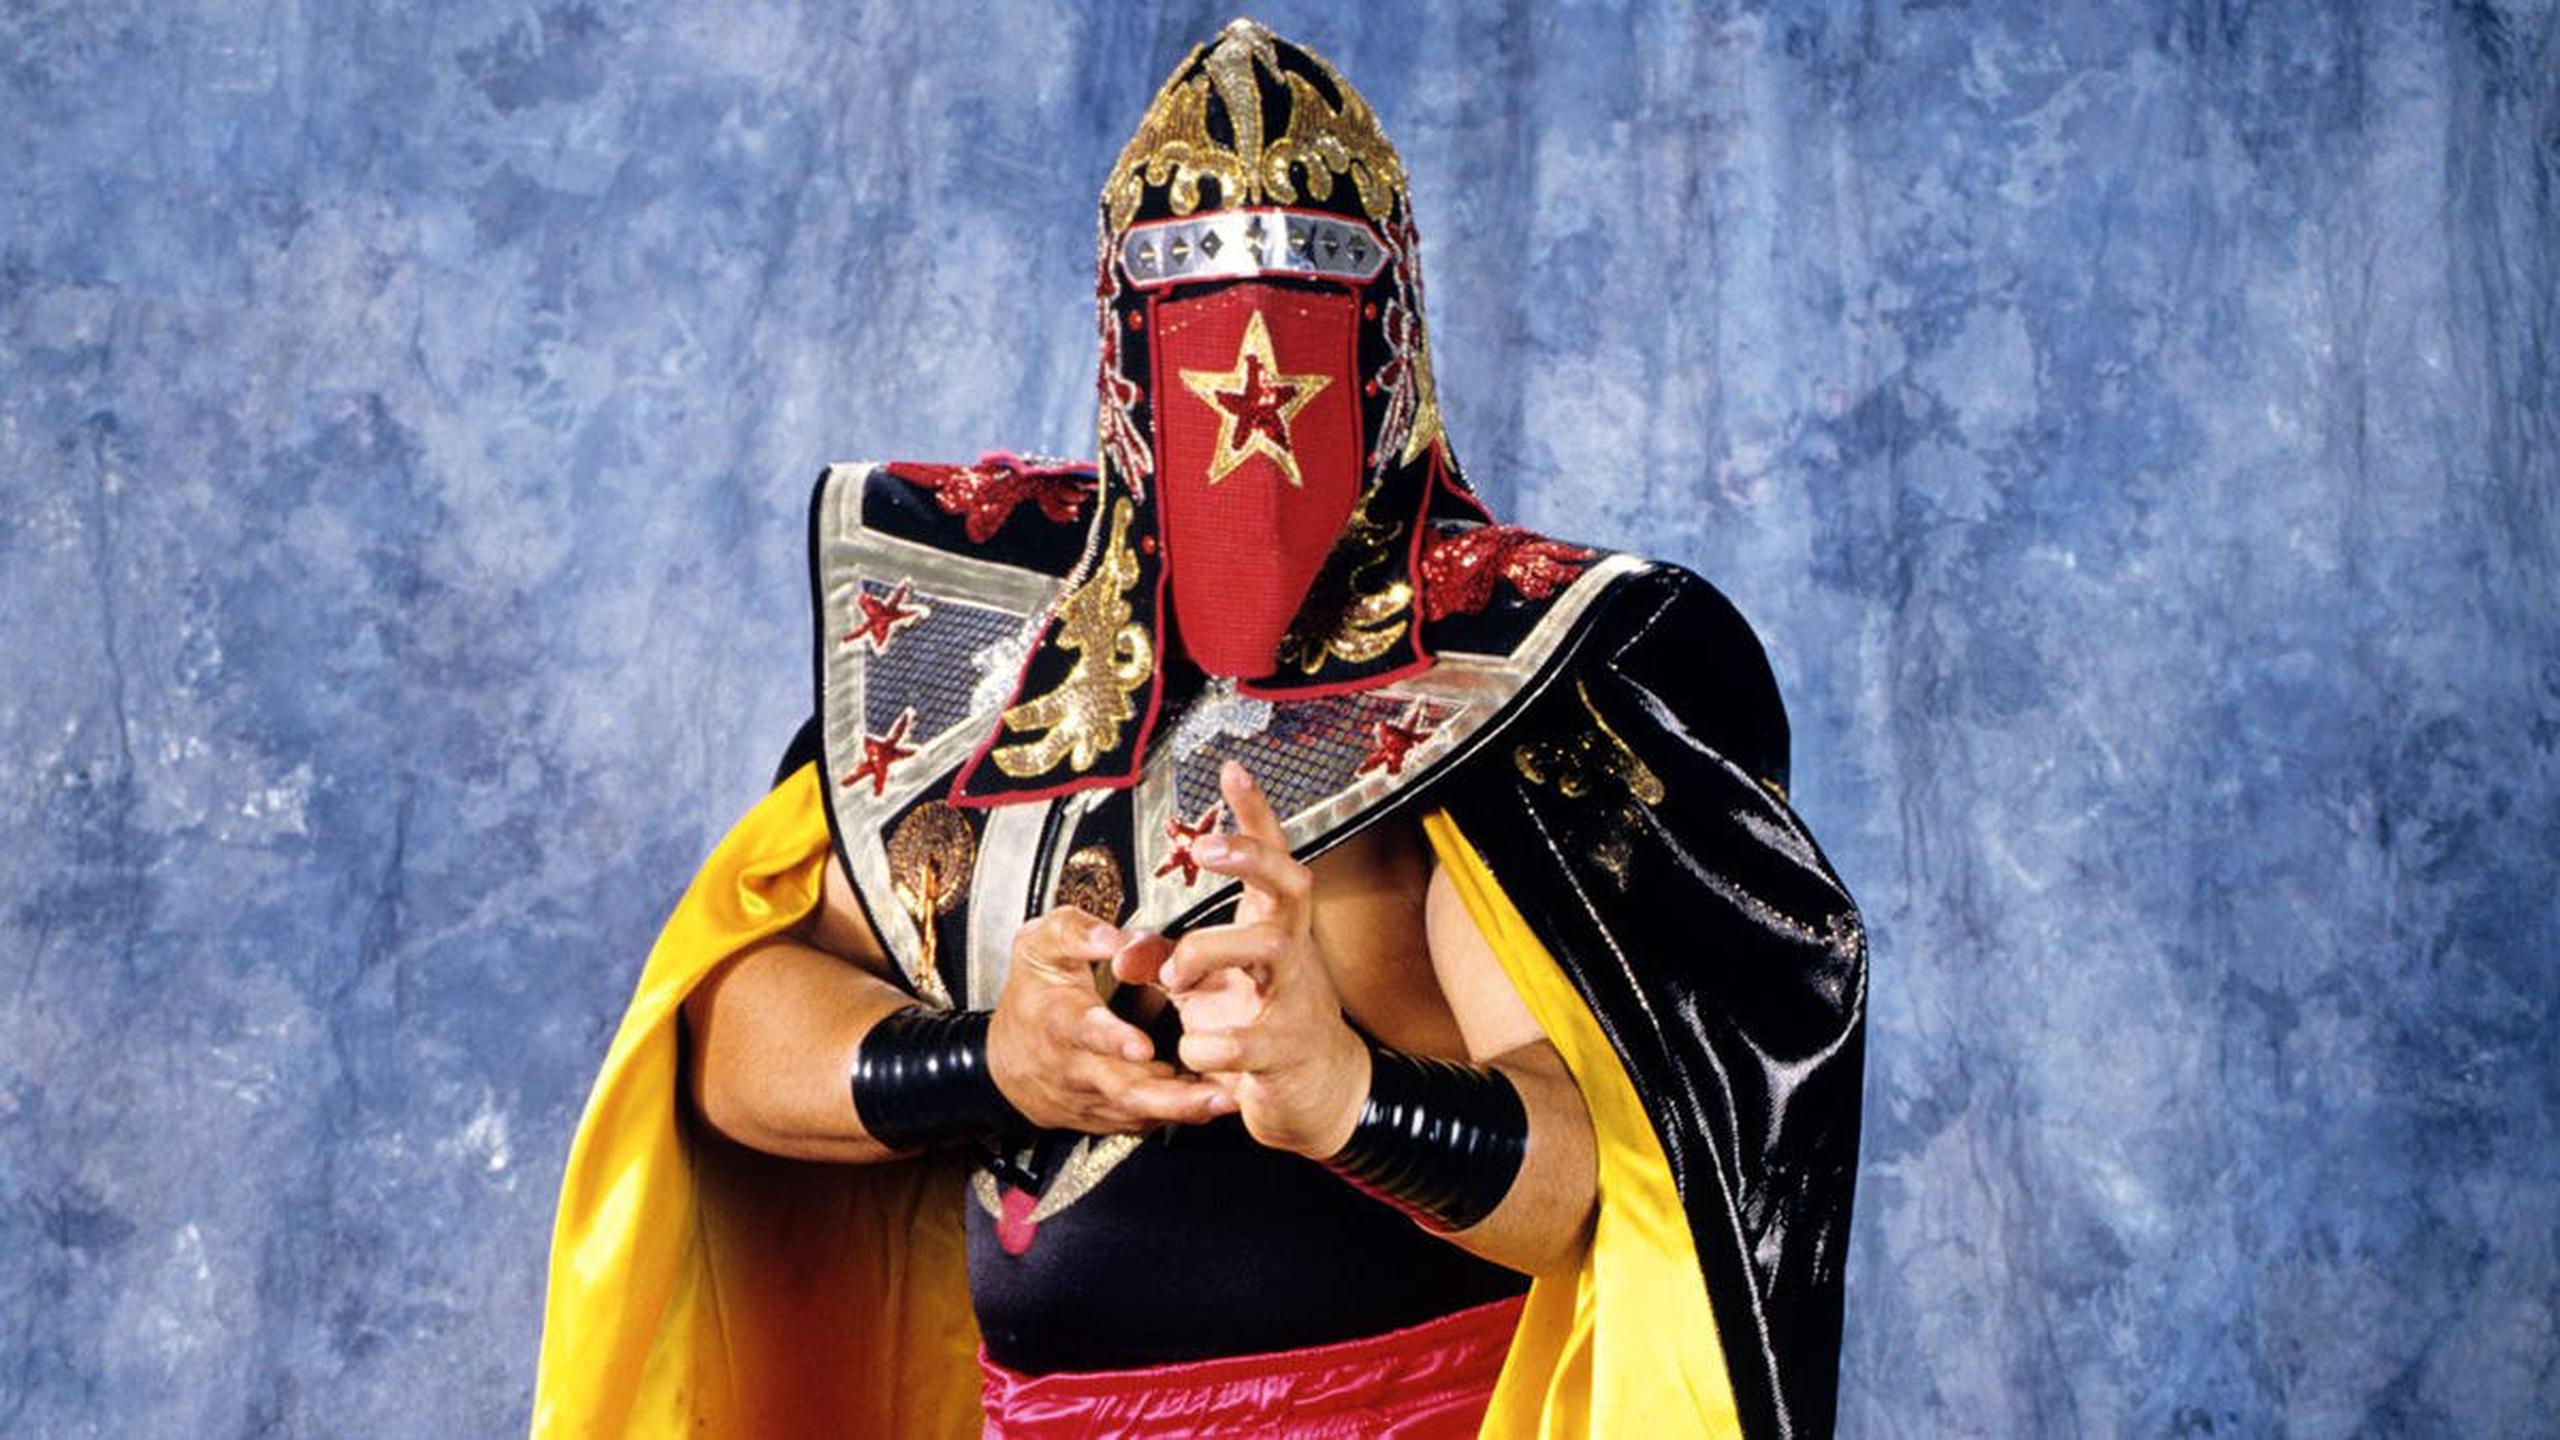 Savio Vega llegó a la WWF bajo la identidad de Kwang, un peleador de artes marciales asiático.